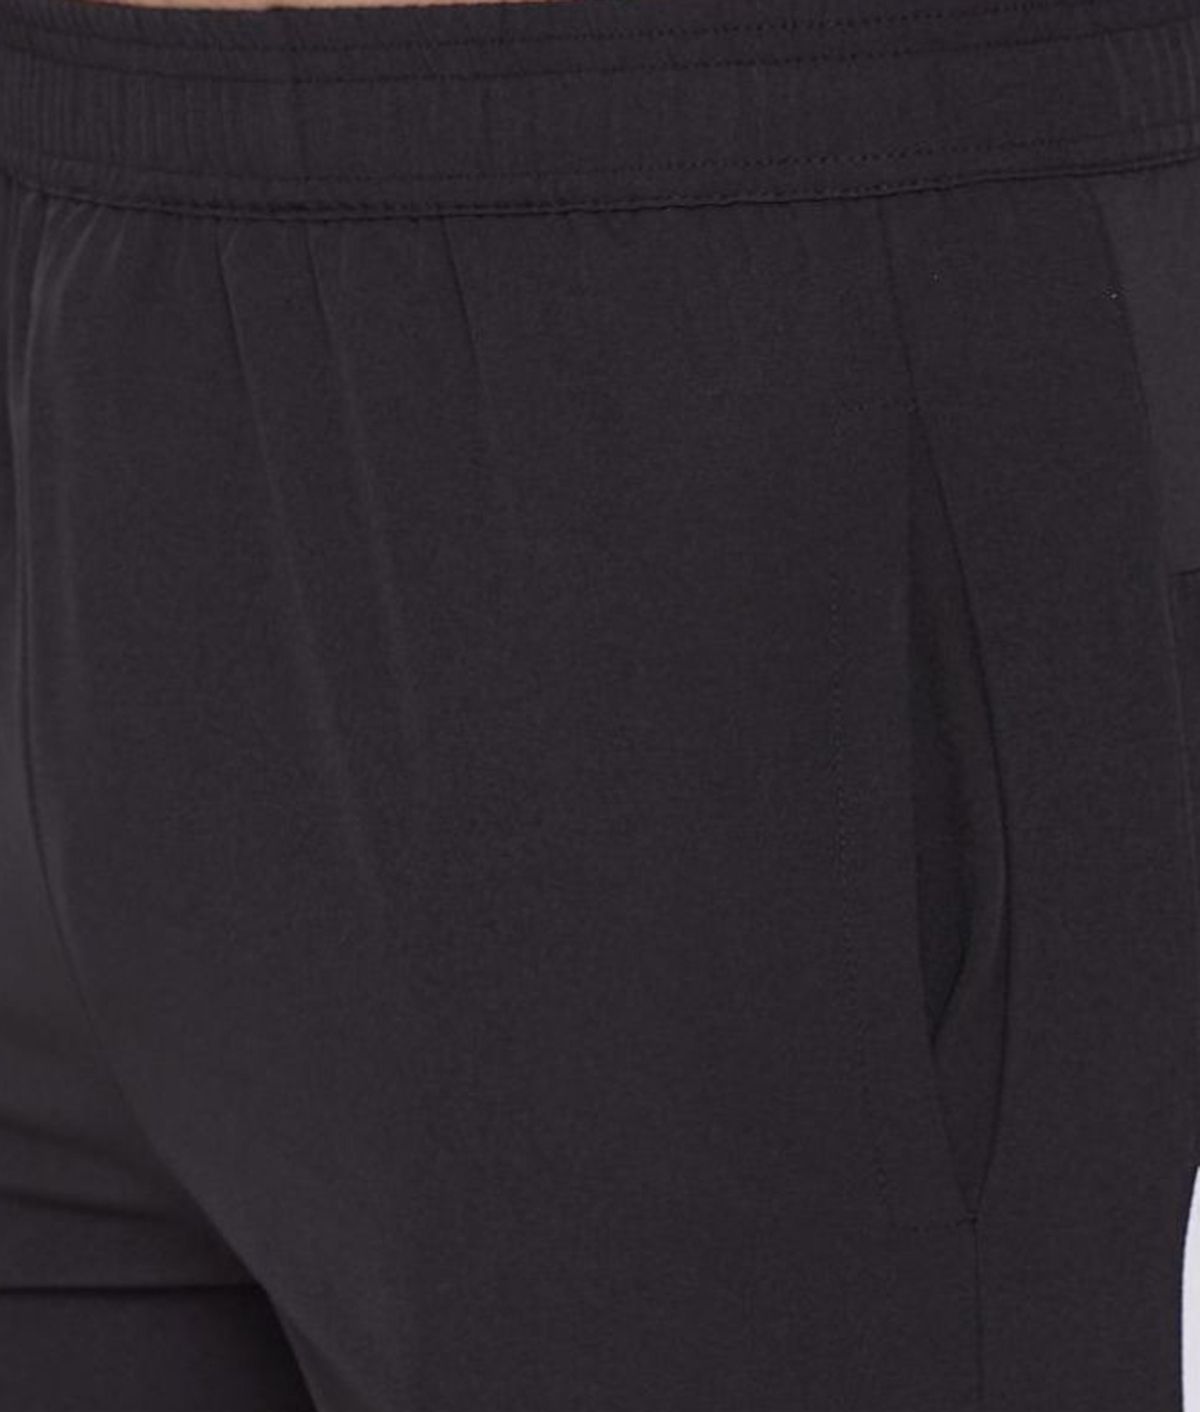     			RANBOLT Black Polyester Lycra Running Shorts